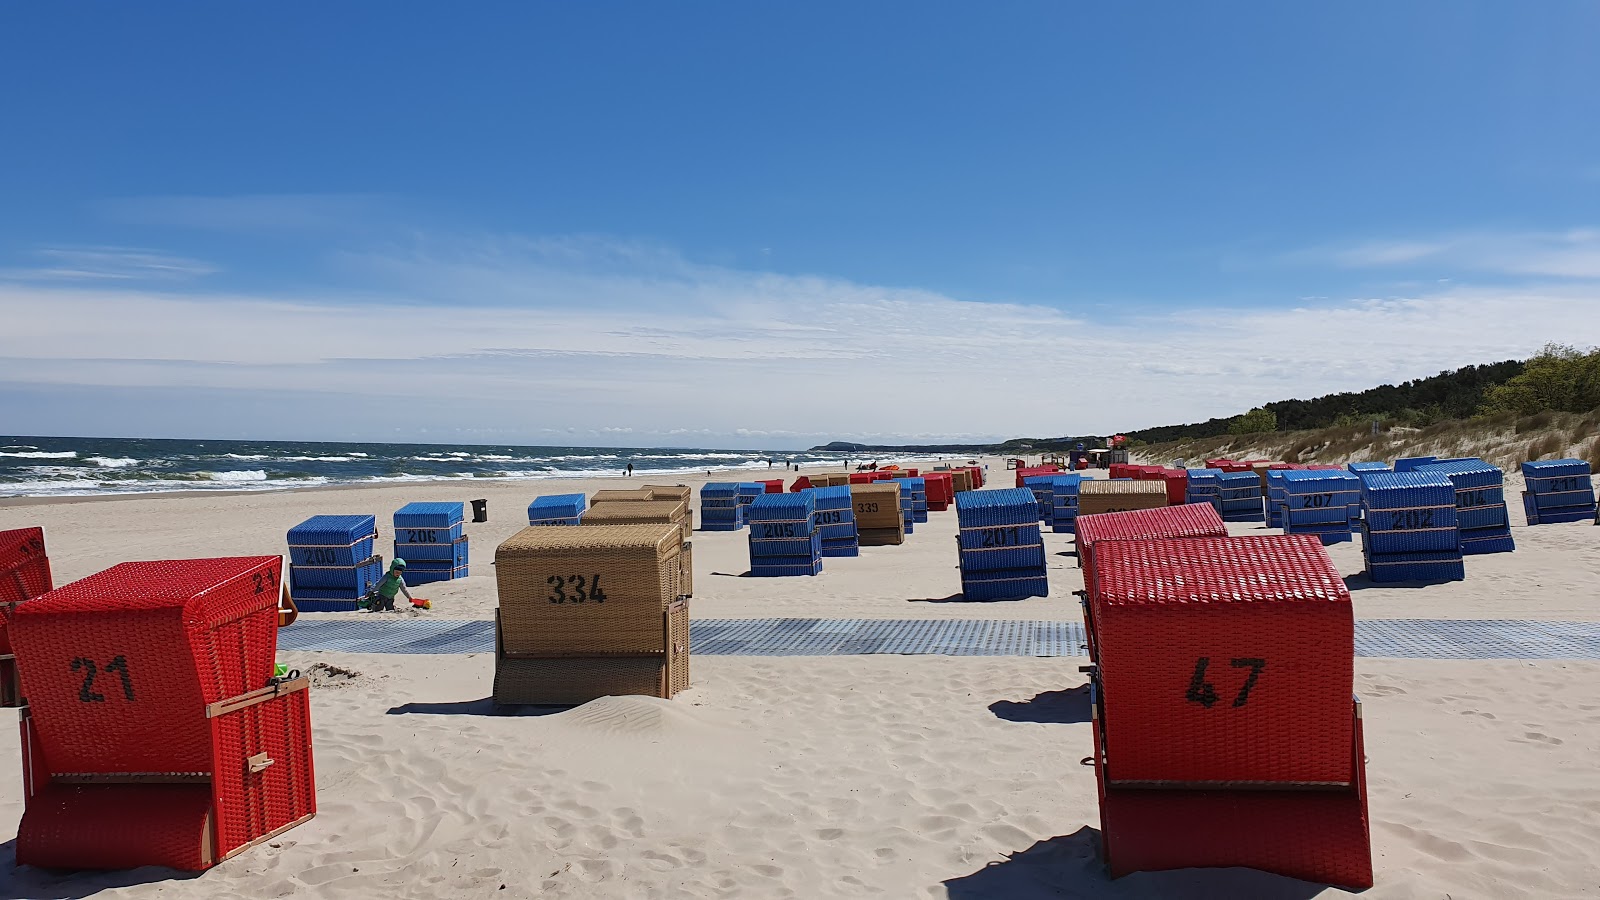 Zdjęcie Trassenheide strand - popularne miejsce wśród znawców relaksu